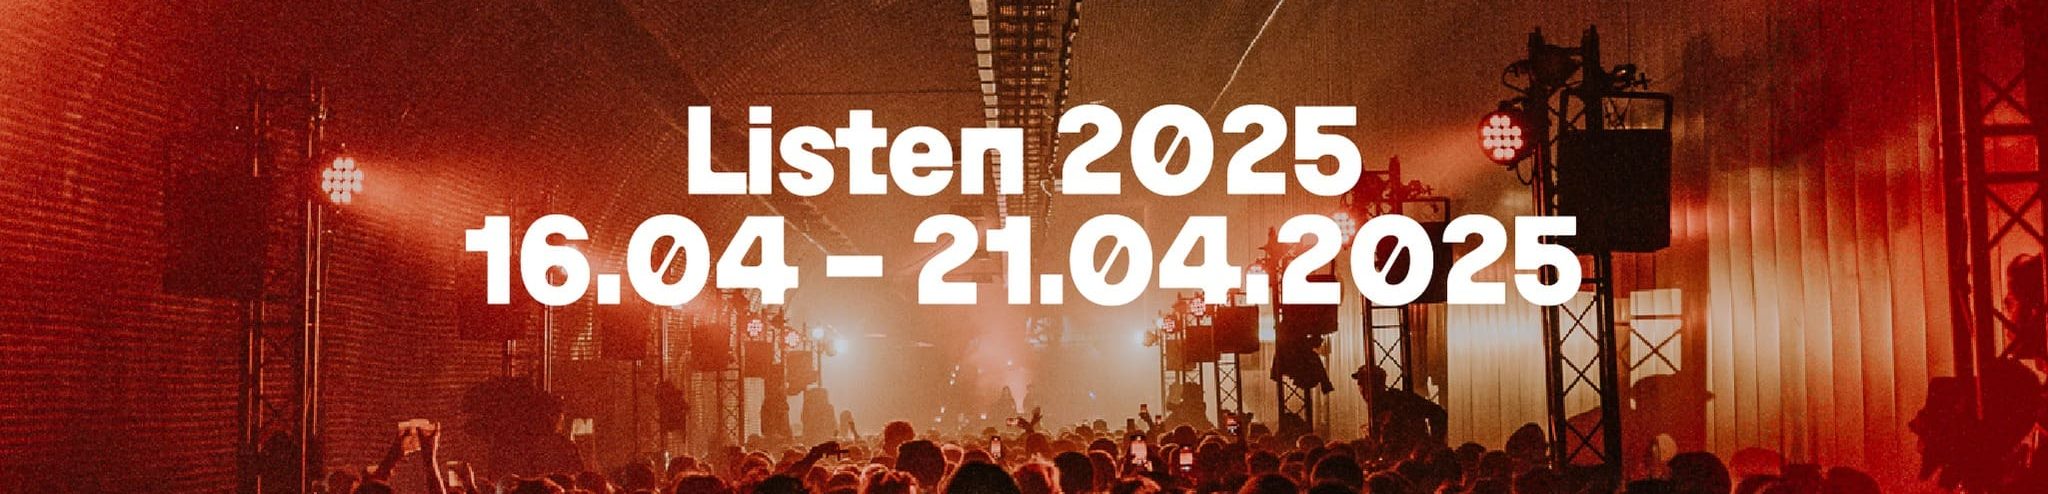 Listen Festival 2025